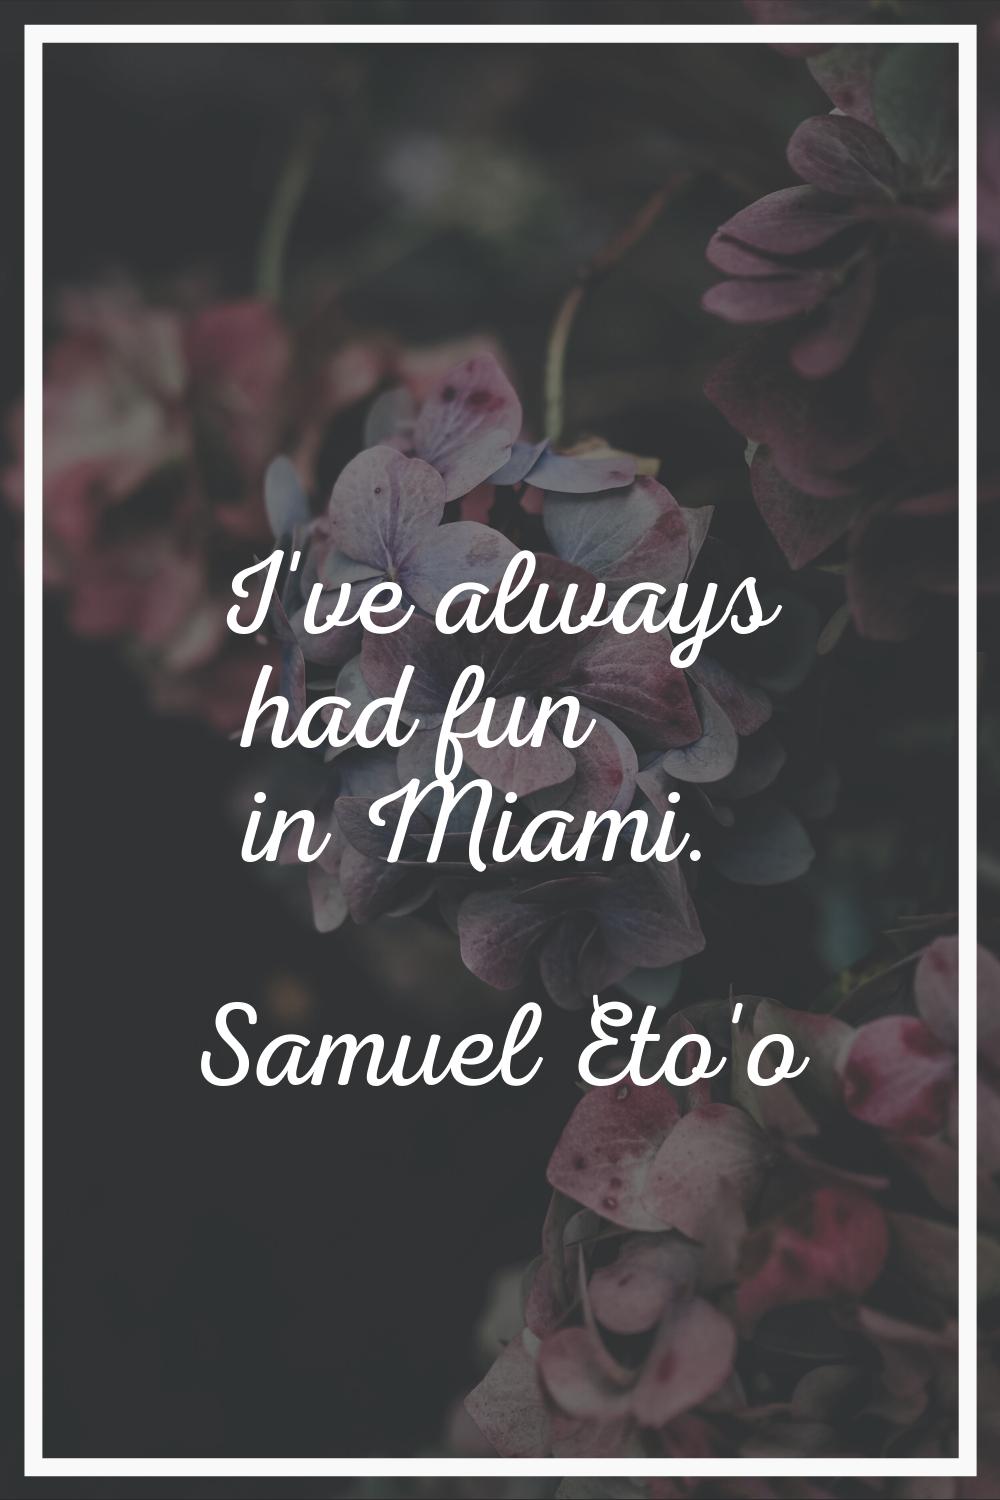 I've always had fun in Miami.